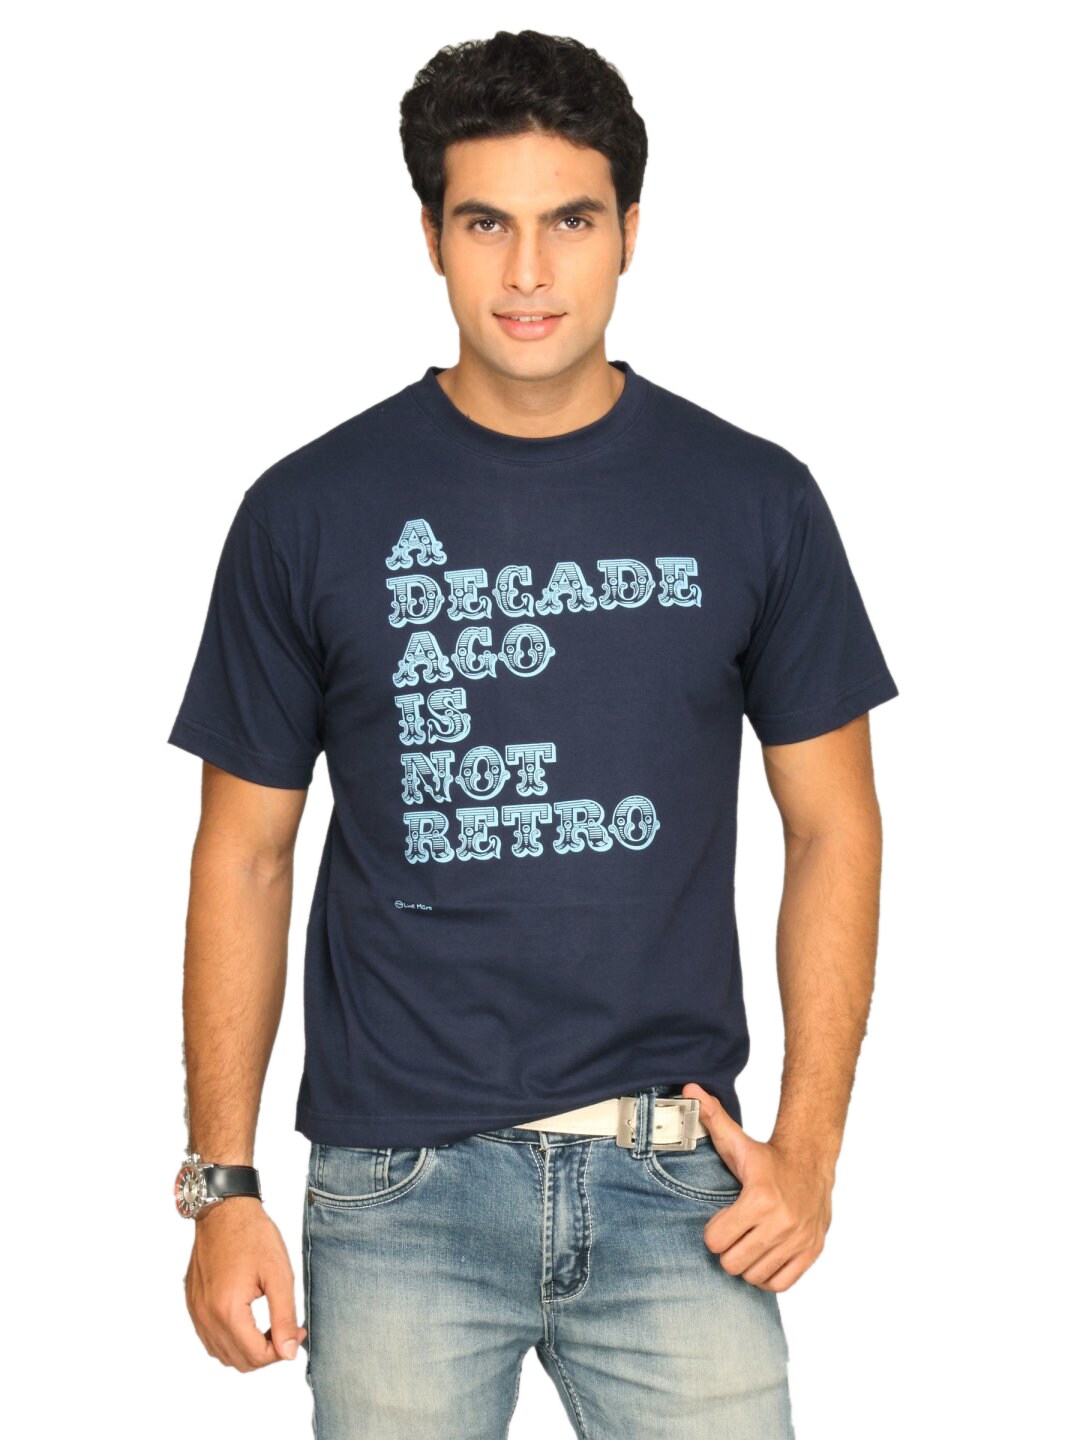 Tantra Men's Decade Ago Blue T-shirt